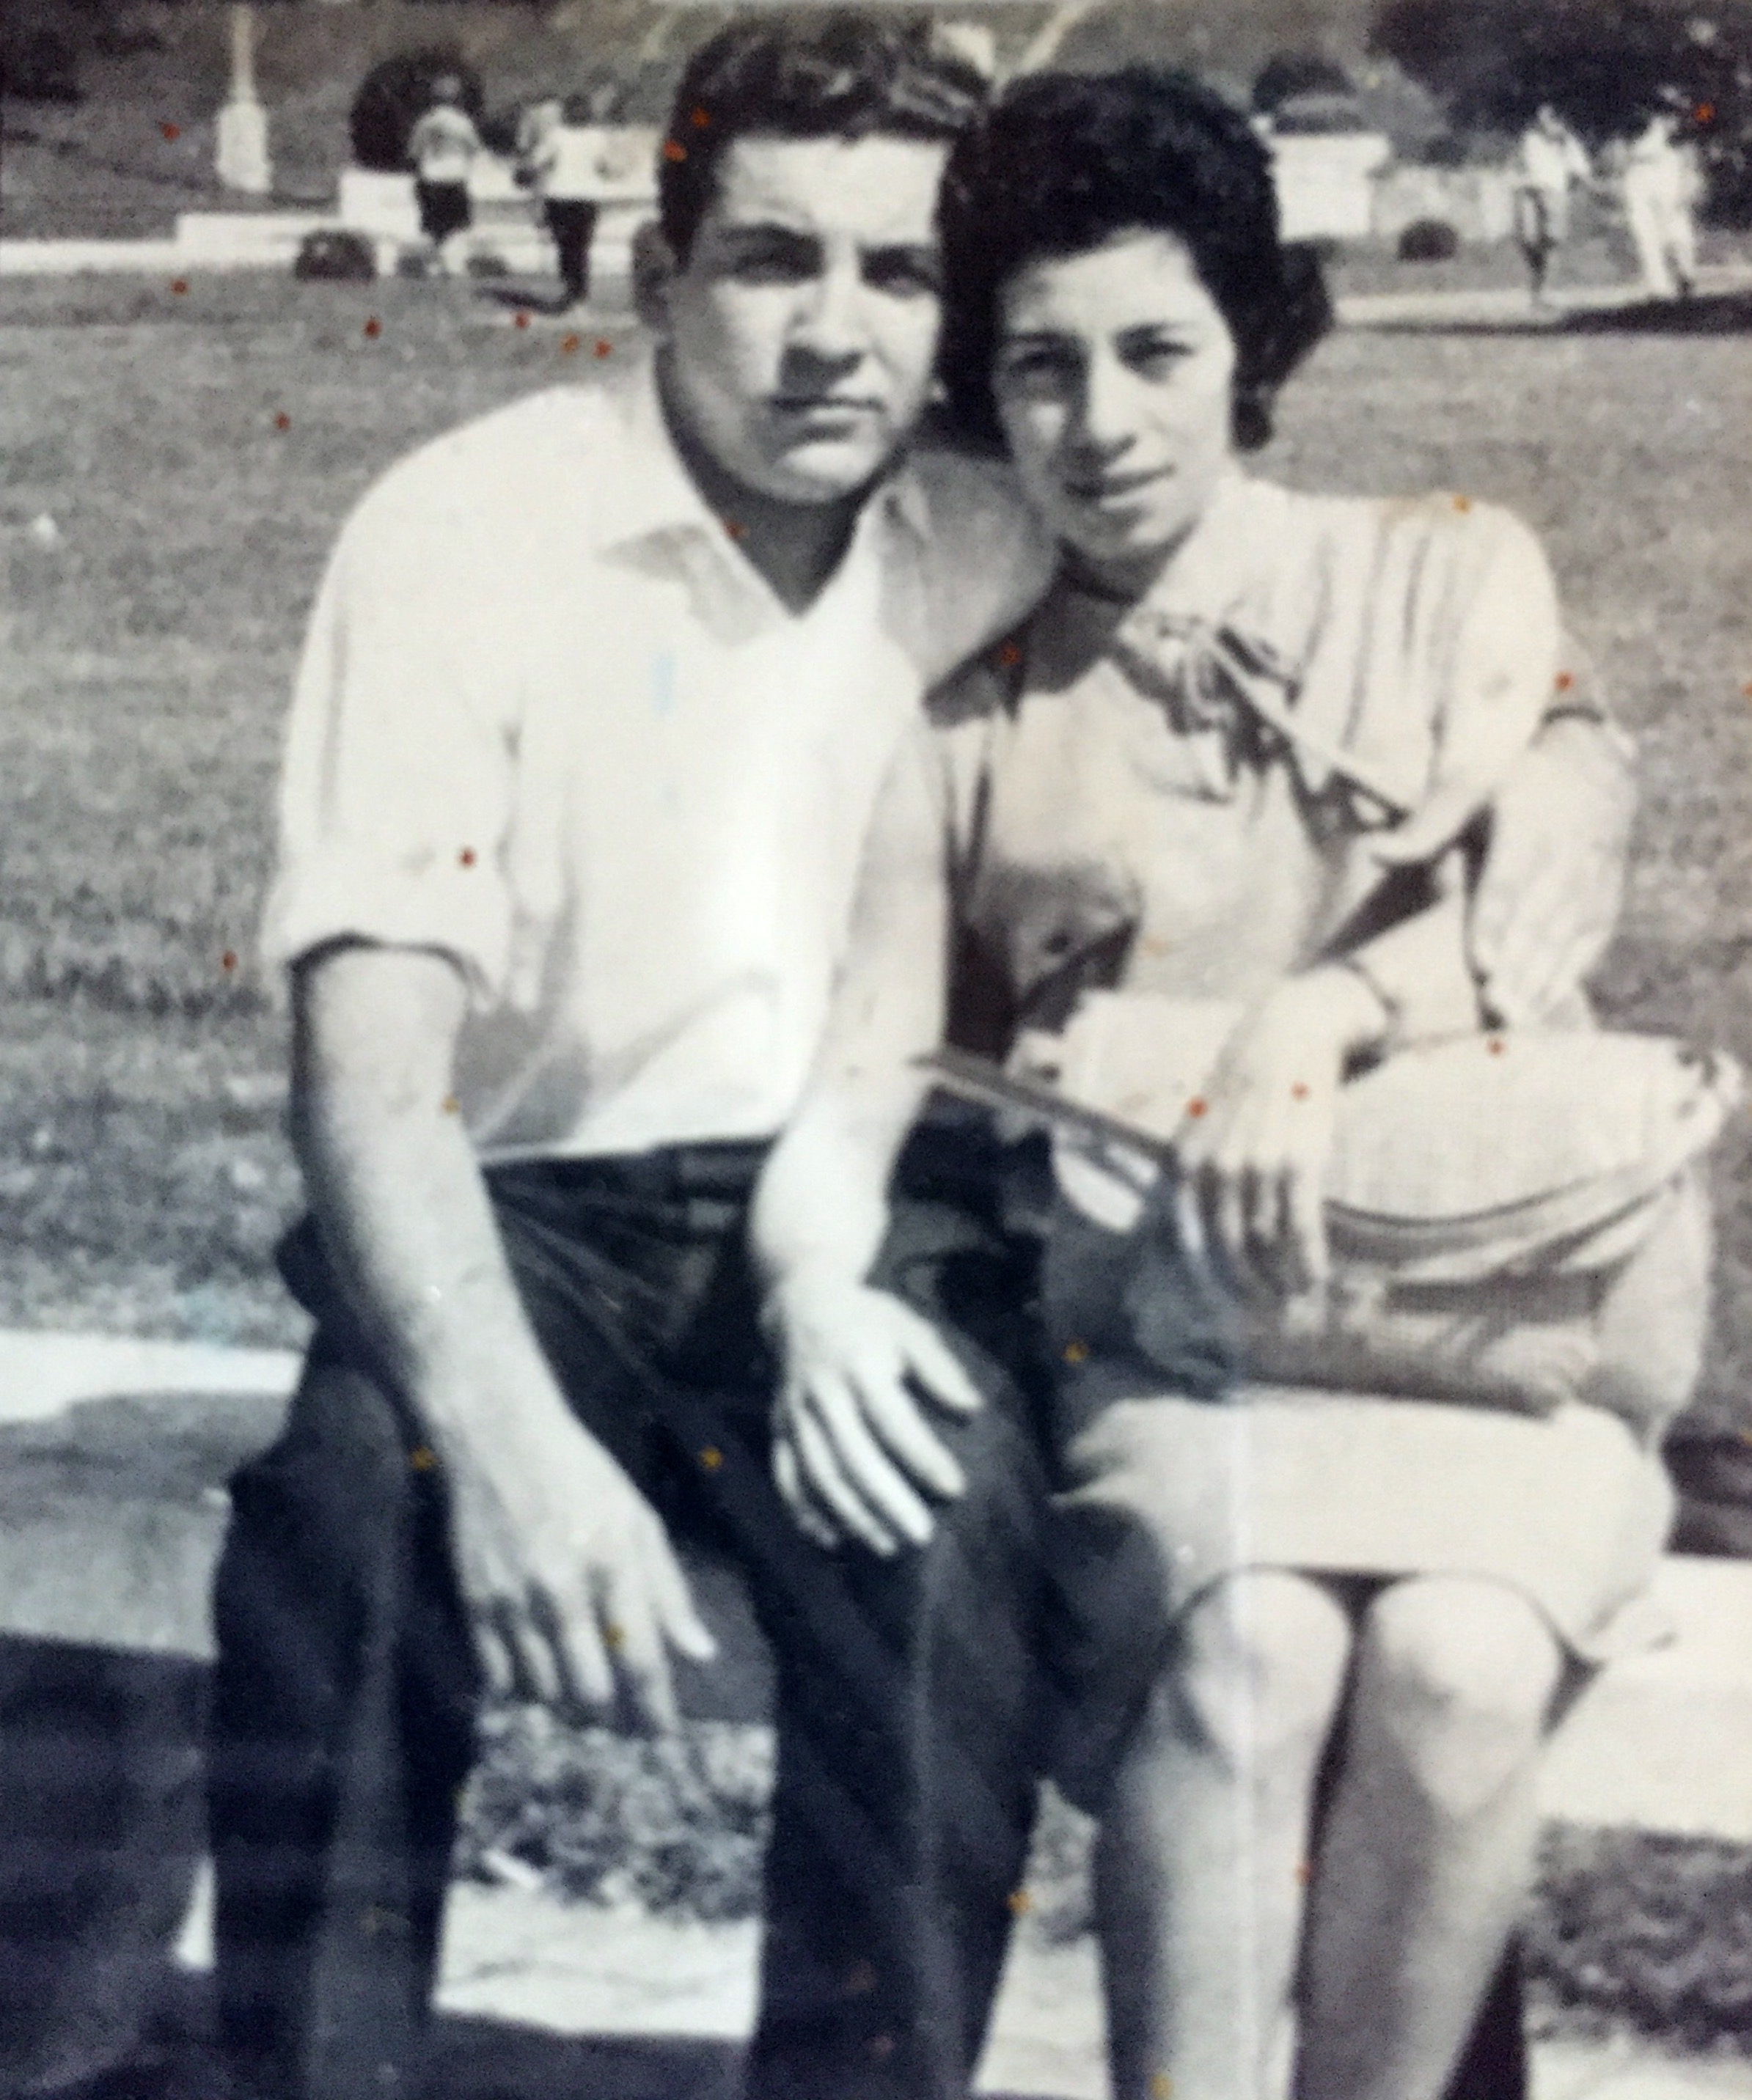 Con mi esposa
En Rosario
Año 1966